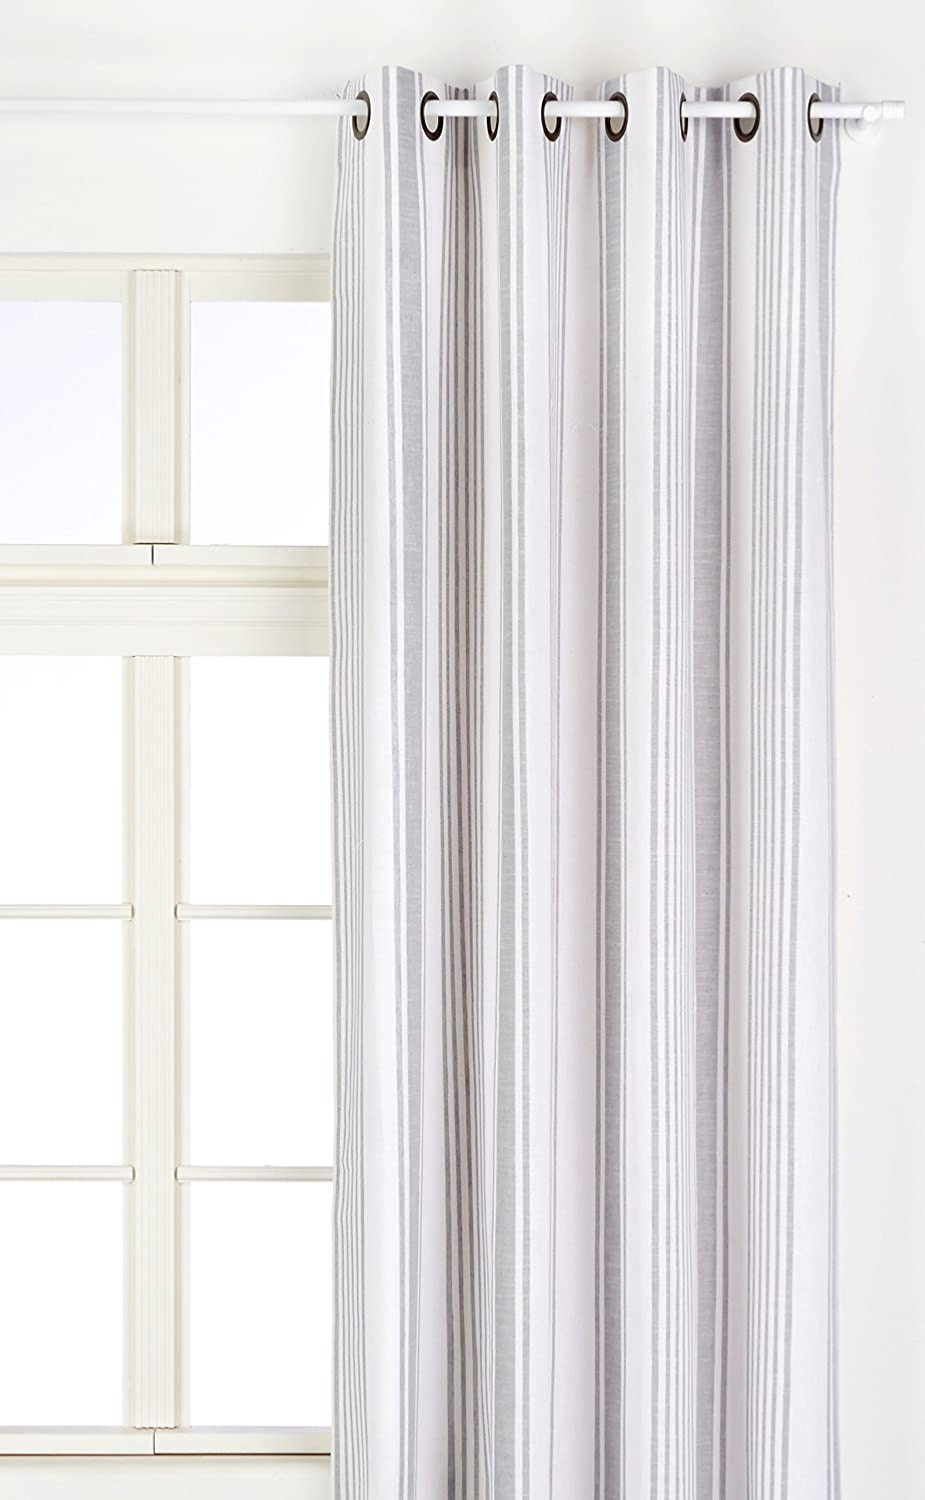 Tissu ameublement base coton rayé vertical gris et blanc